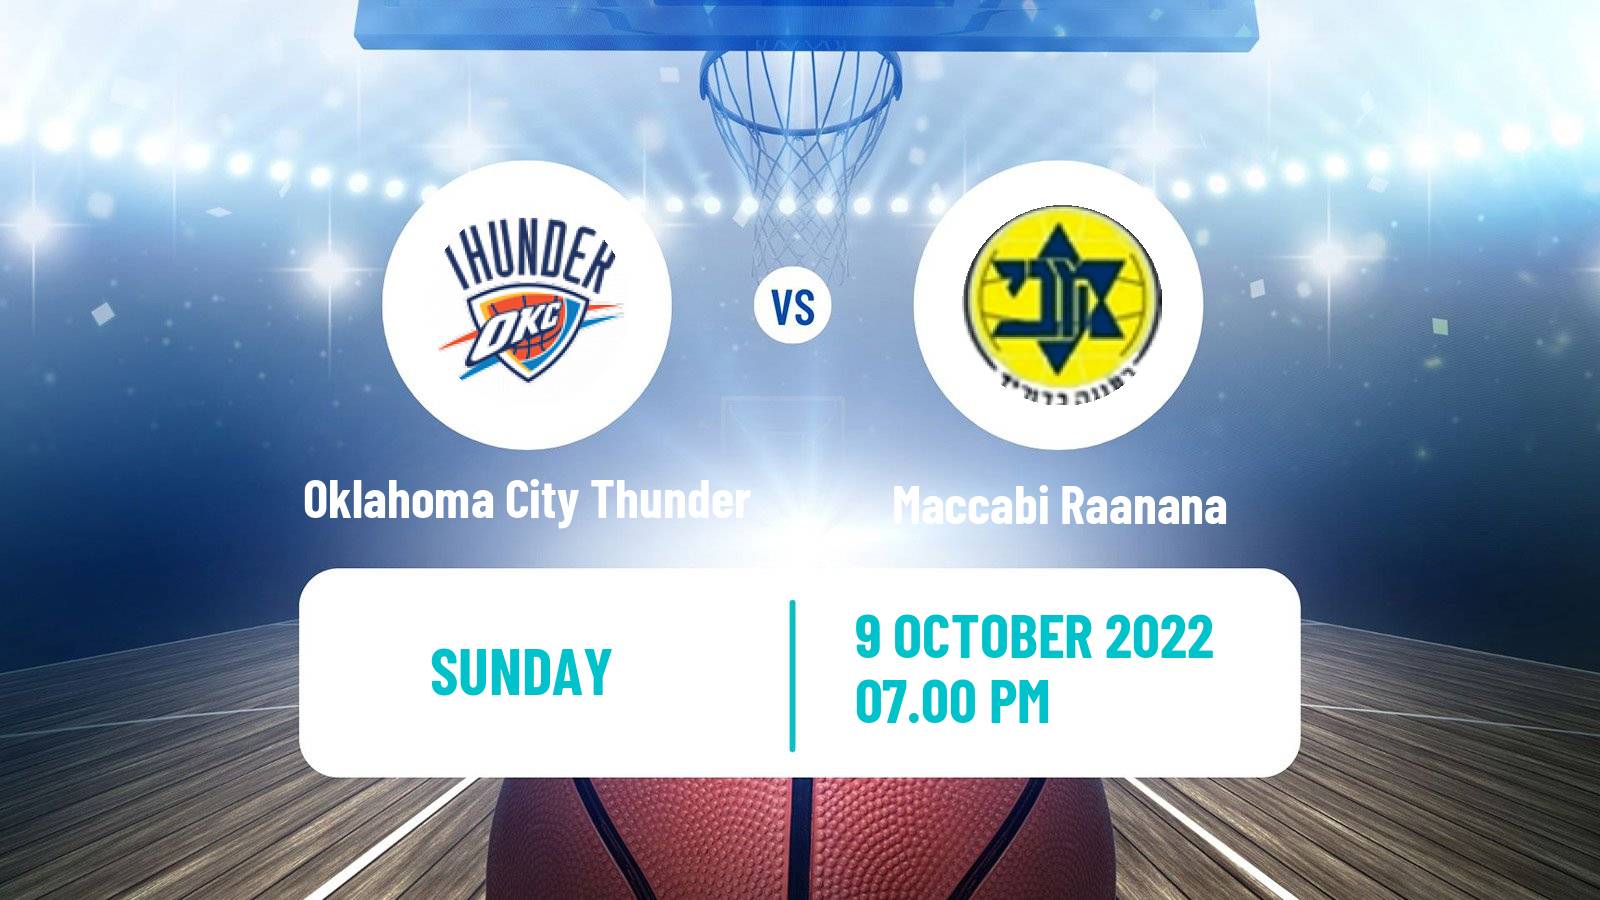 Basketball Club Friendly Basketball Oklahoma City Thunder - Maccabi Raanana